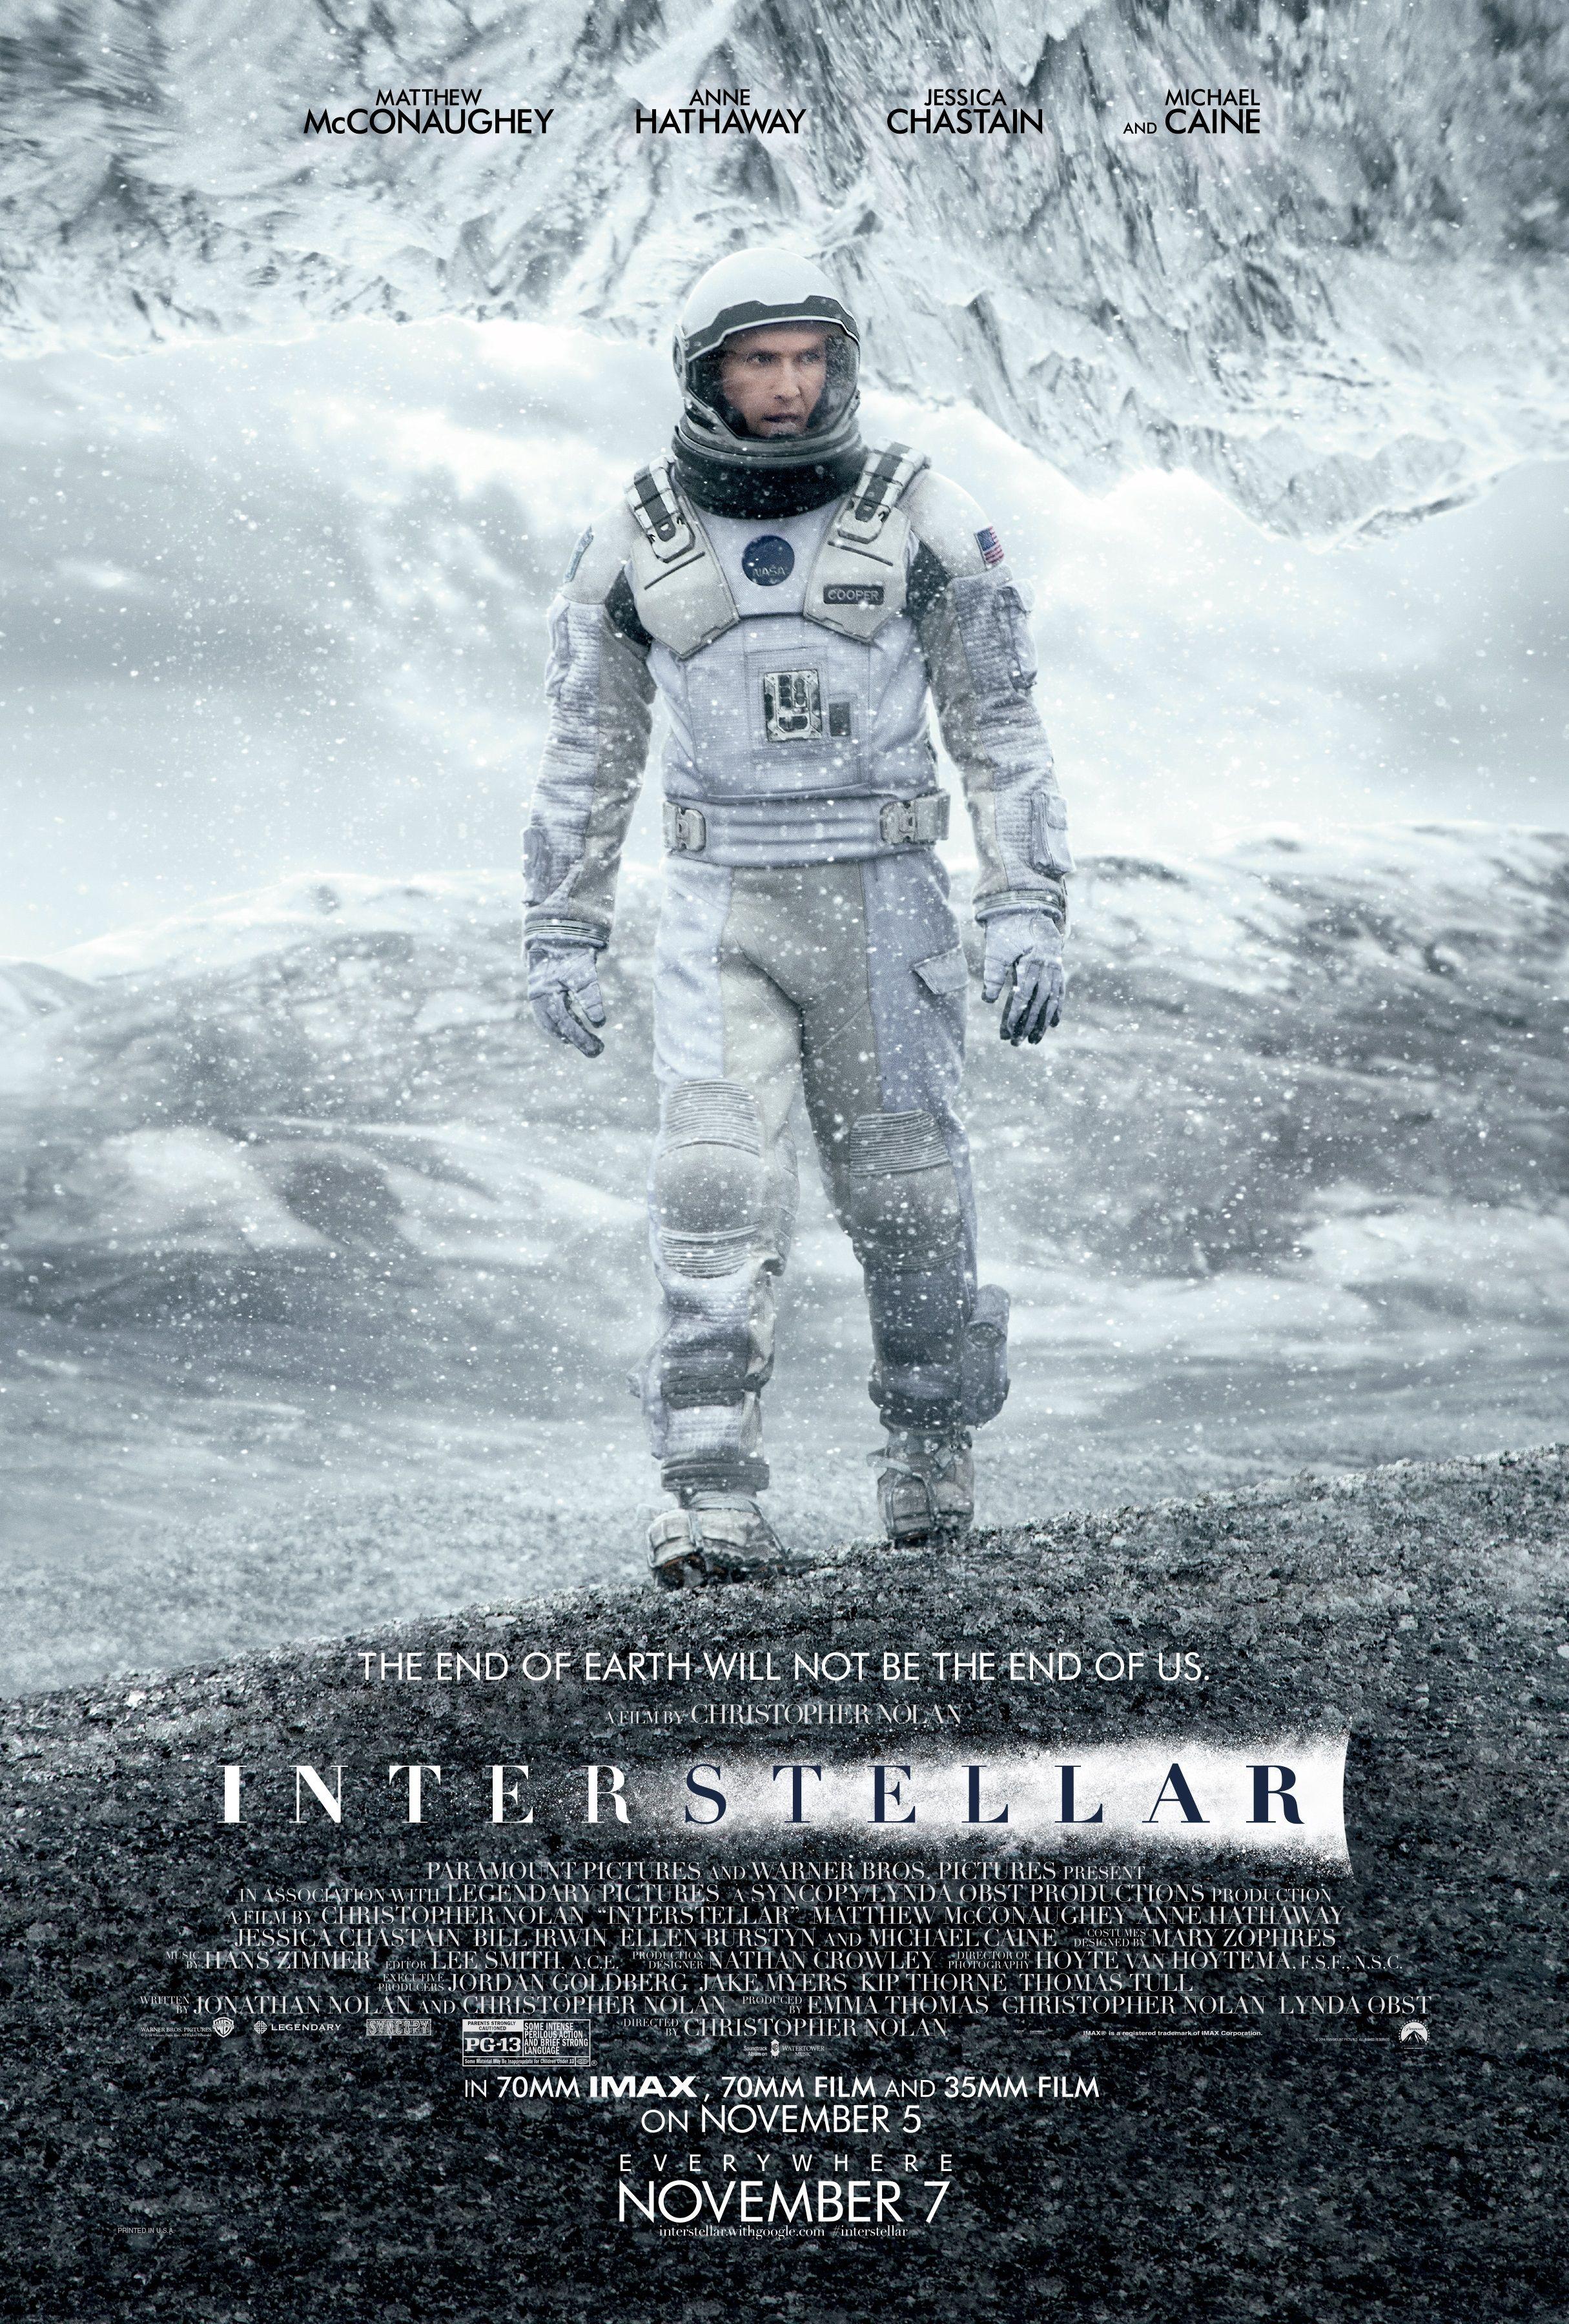 NASA Interstellar Movie Logo - Interstellar (2014) - IMDb